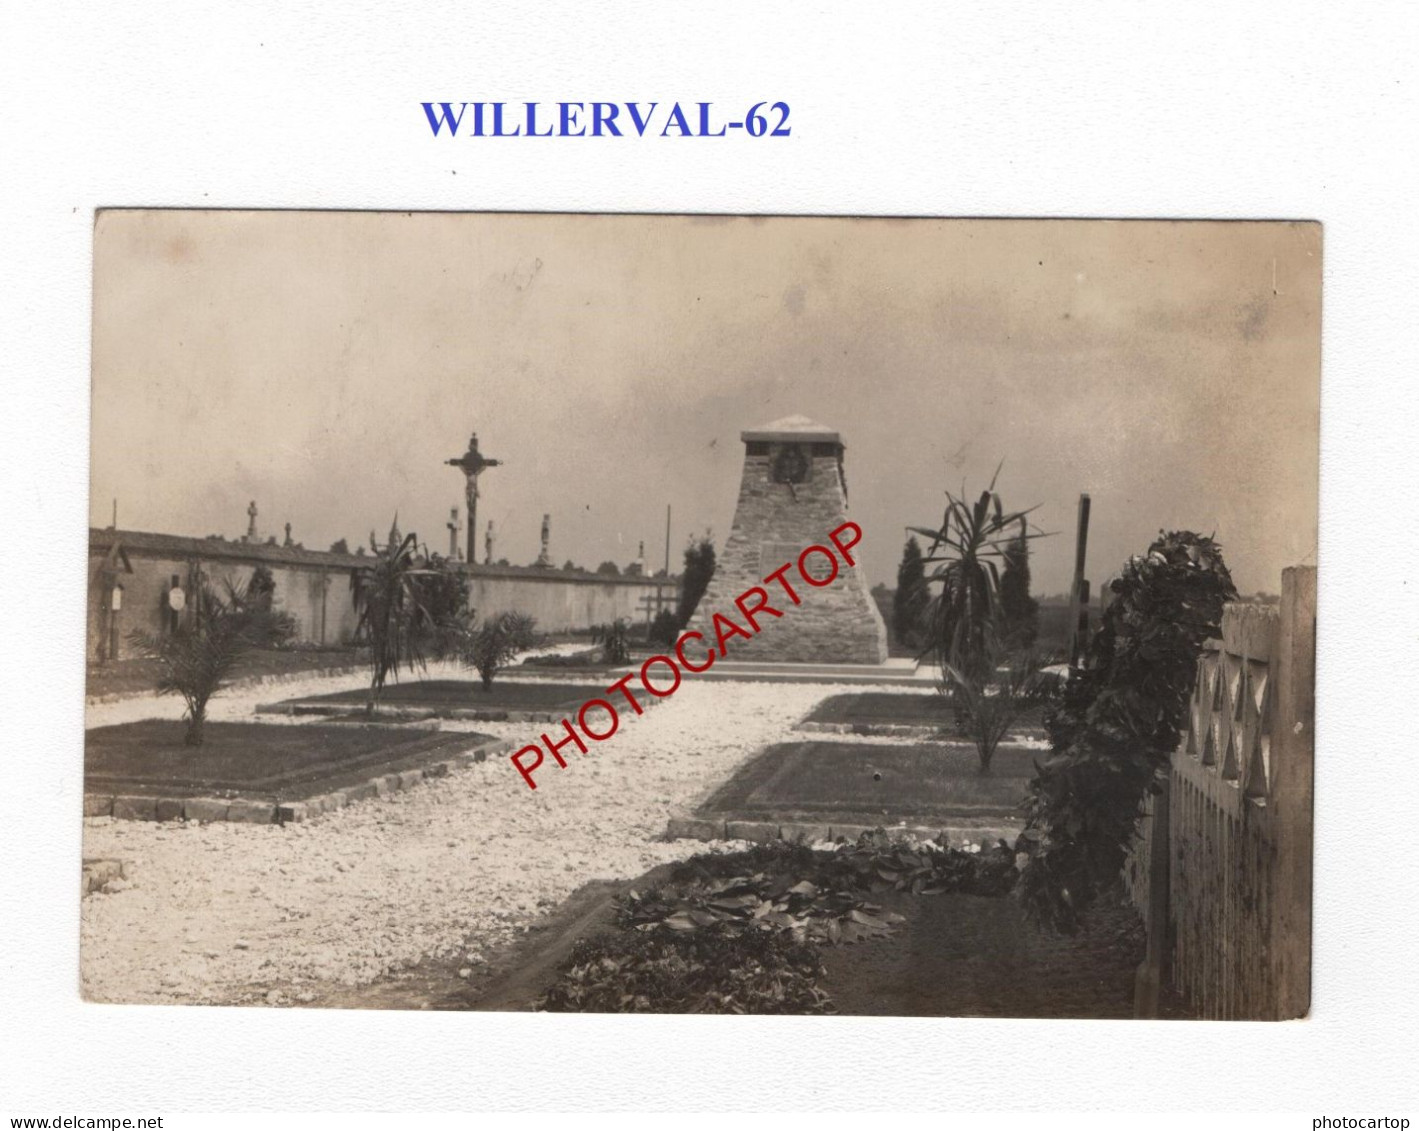 WILLERVAL-62-Monument-Cimetiere-Tombes-CARTE PHOTO Allemande-GUERRE 14-18-1 WK-MILITARIA- - Soldatenfriedhöfen